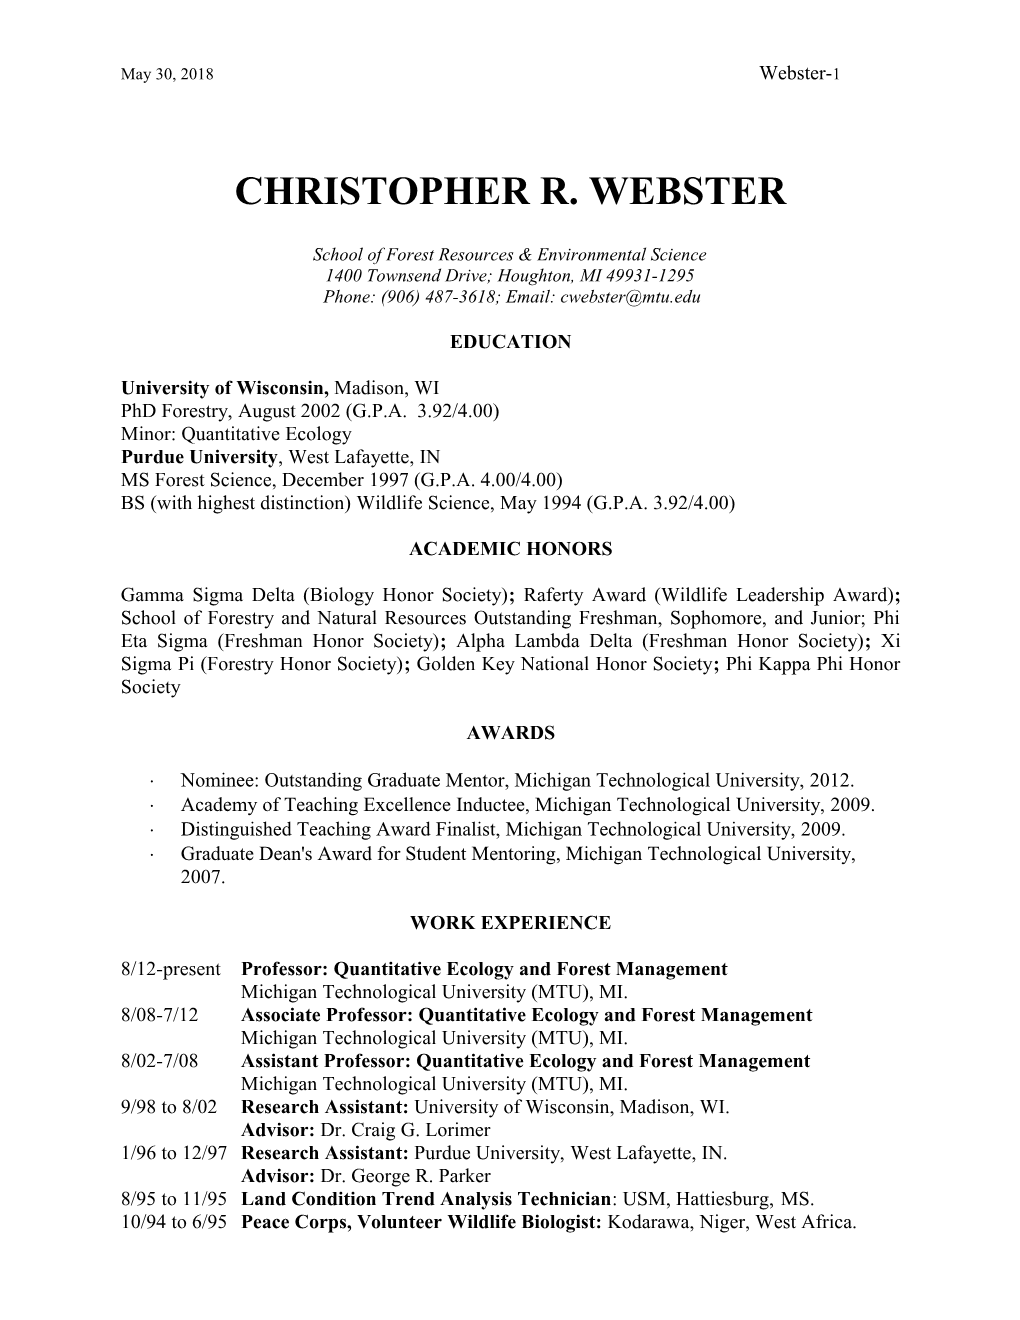 Christopher R. Webster